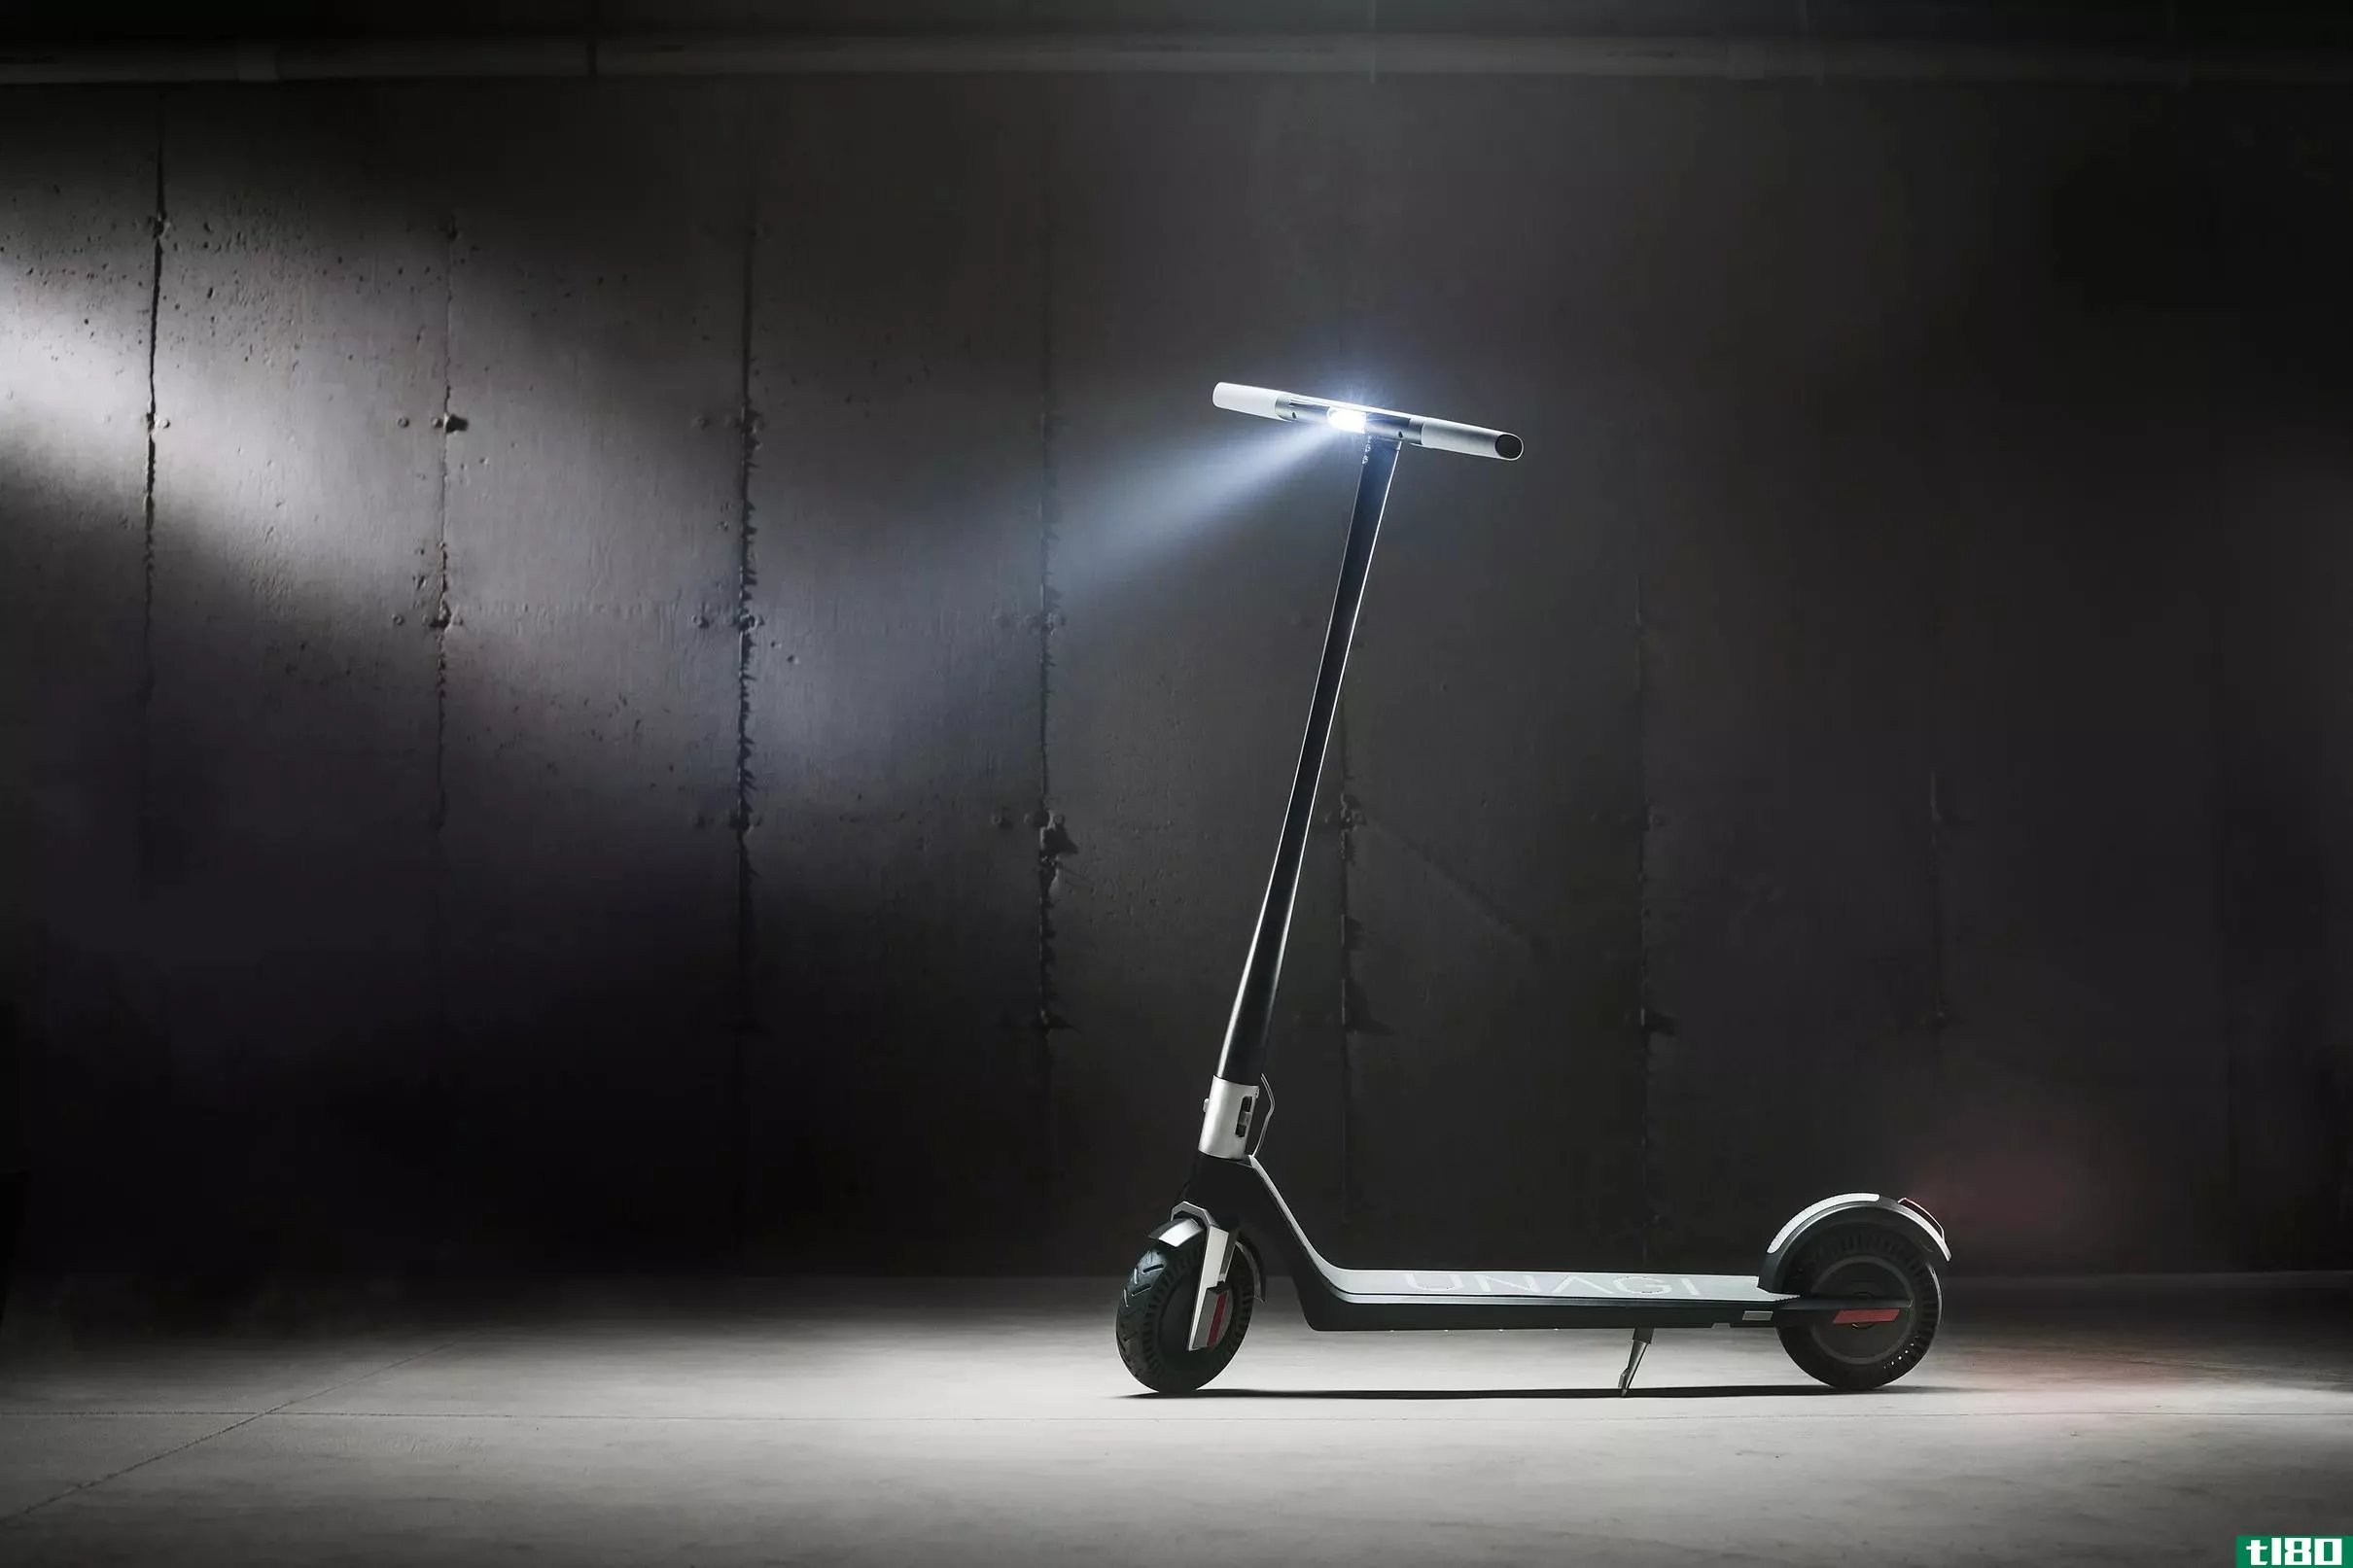 unagi推出了每月39美元的时尚电动踏板车订阅服务